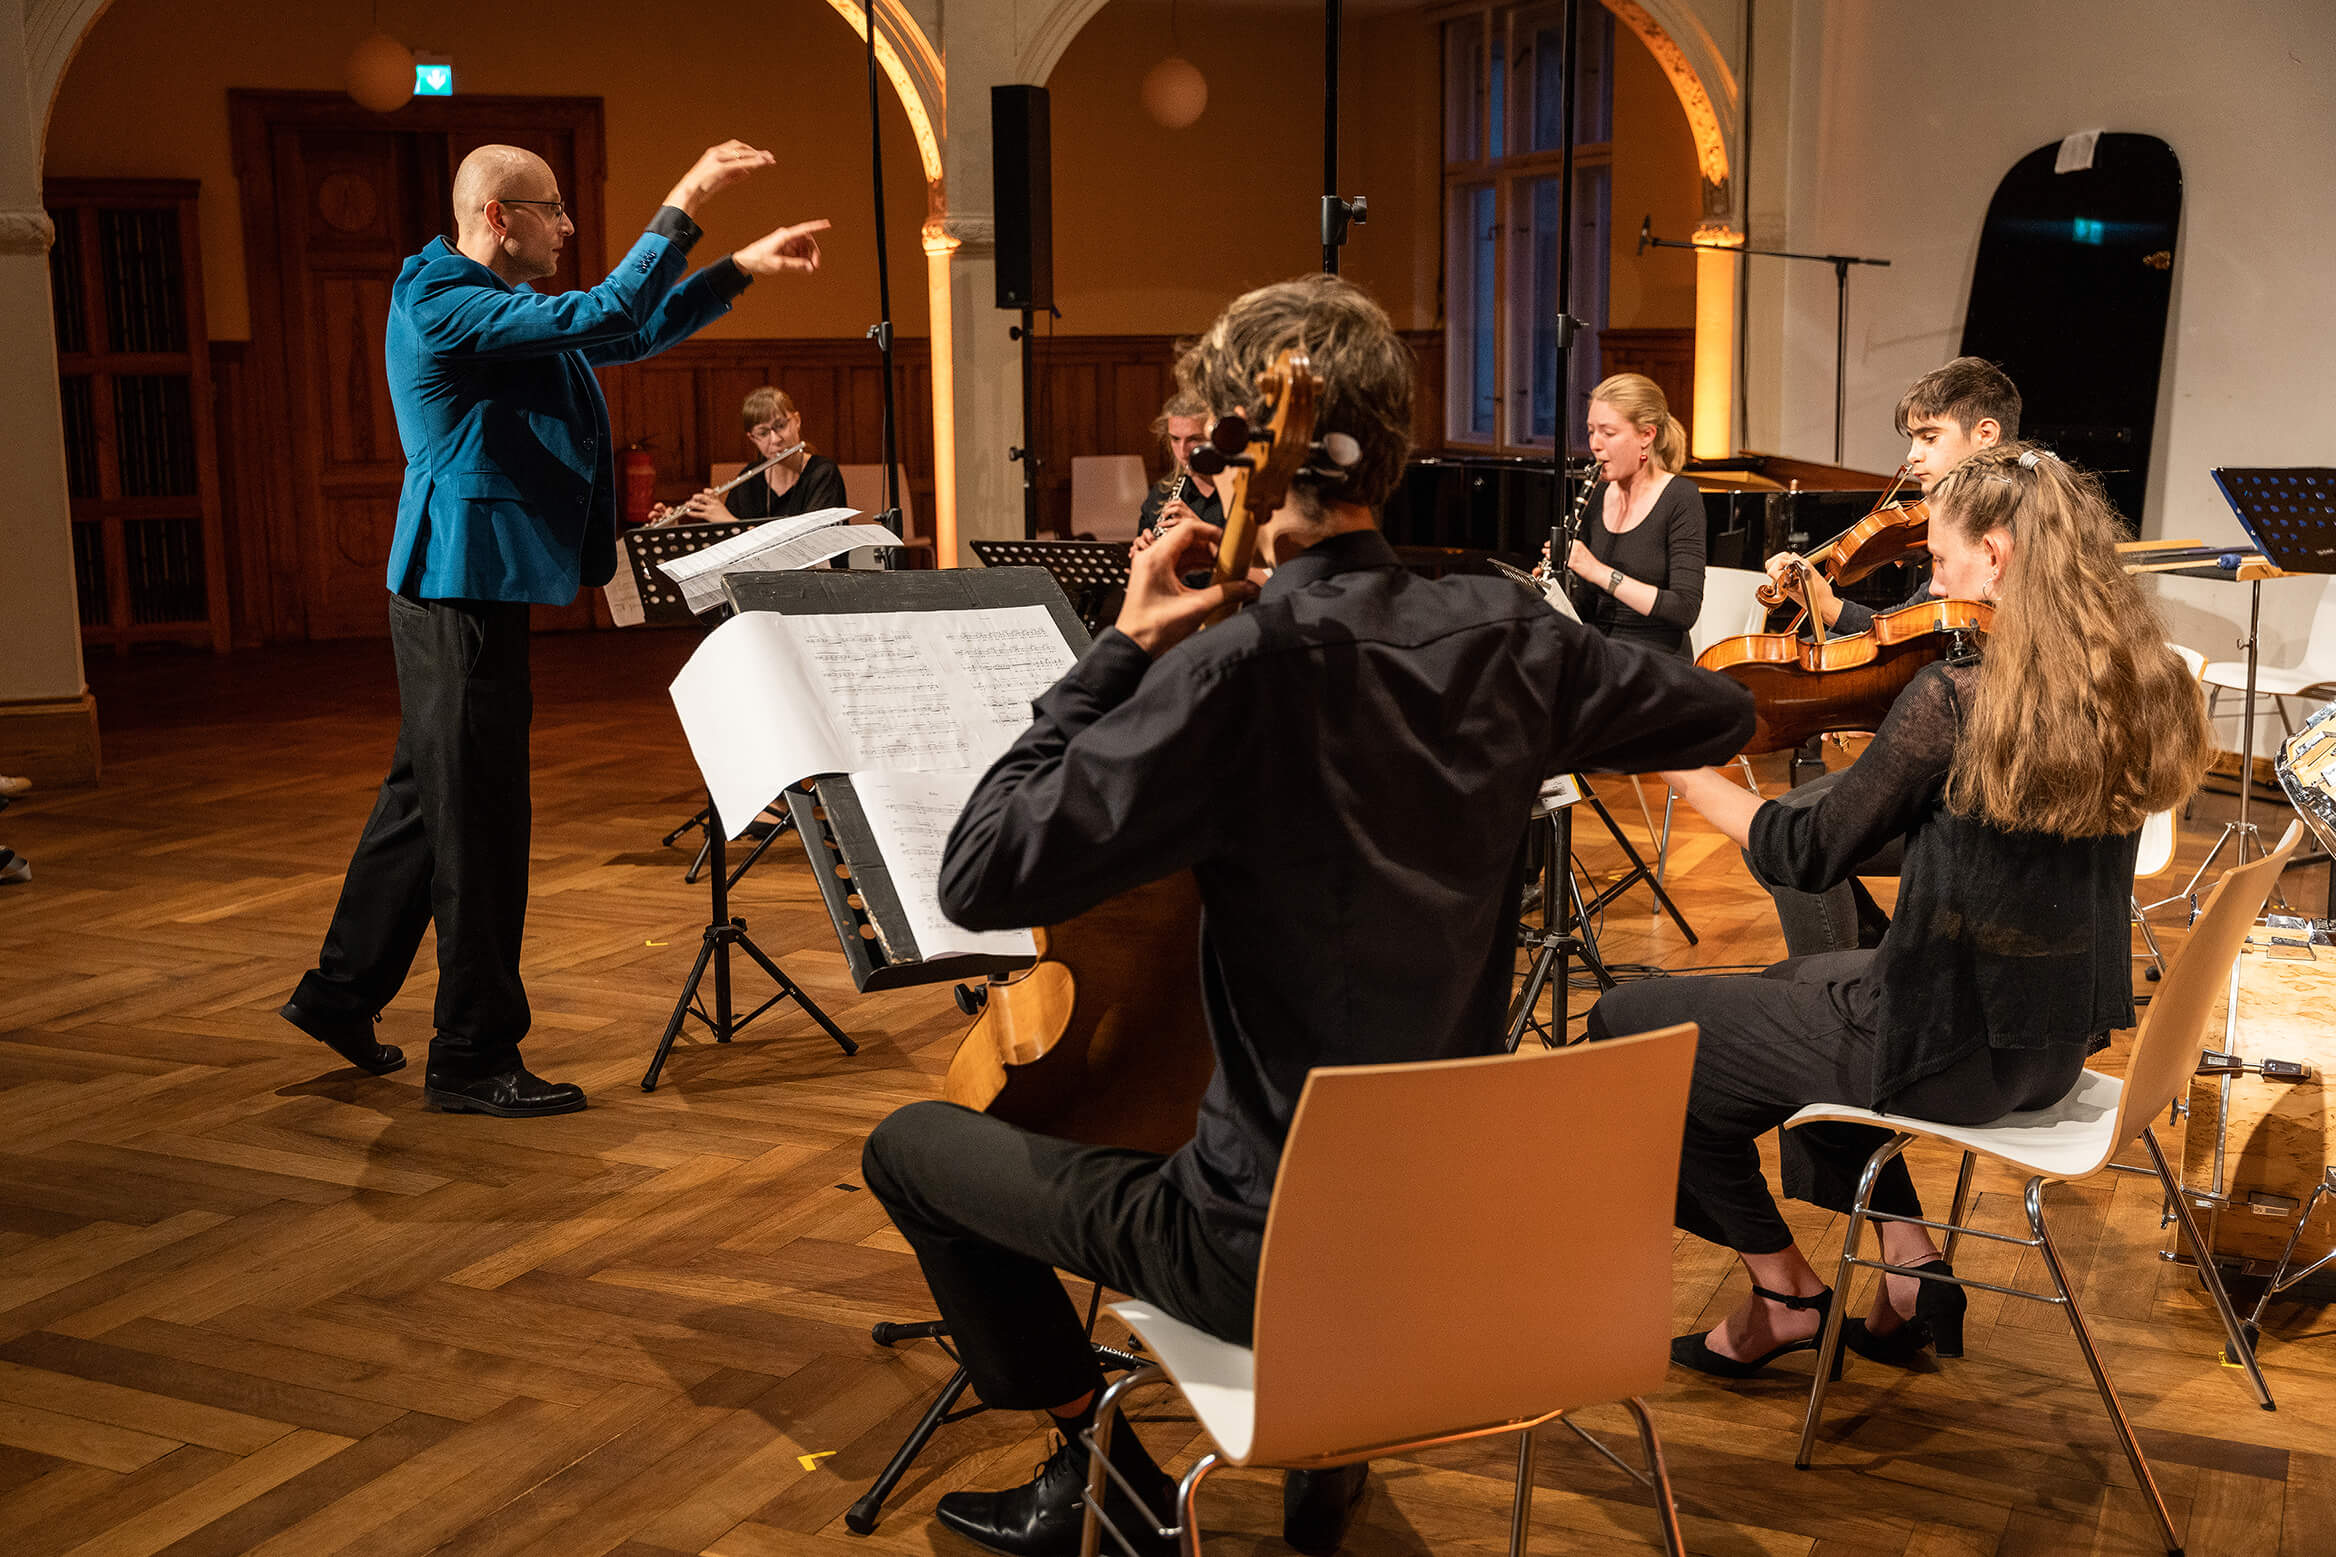 Das Bild zeigt einen Dirigent und das Orchester, welches er anleitet, beim spielen.